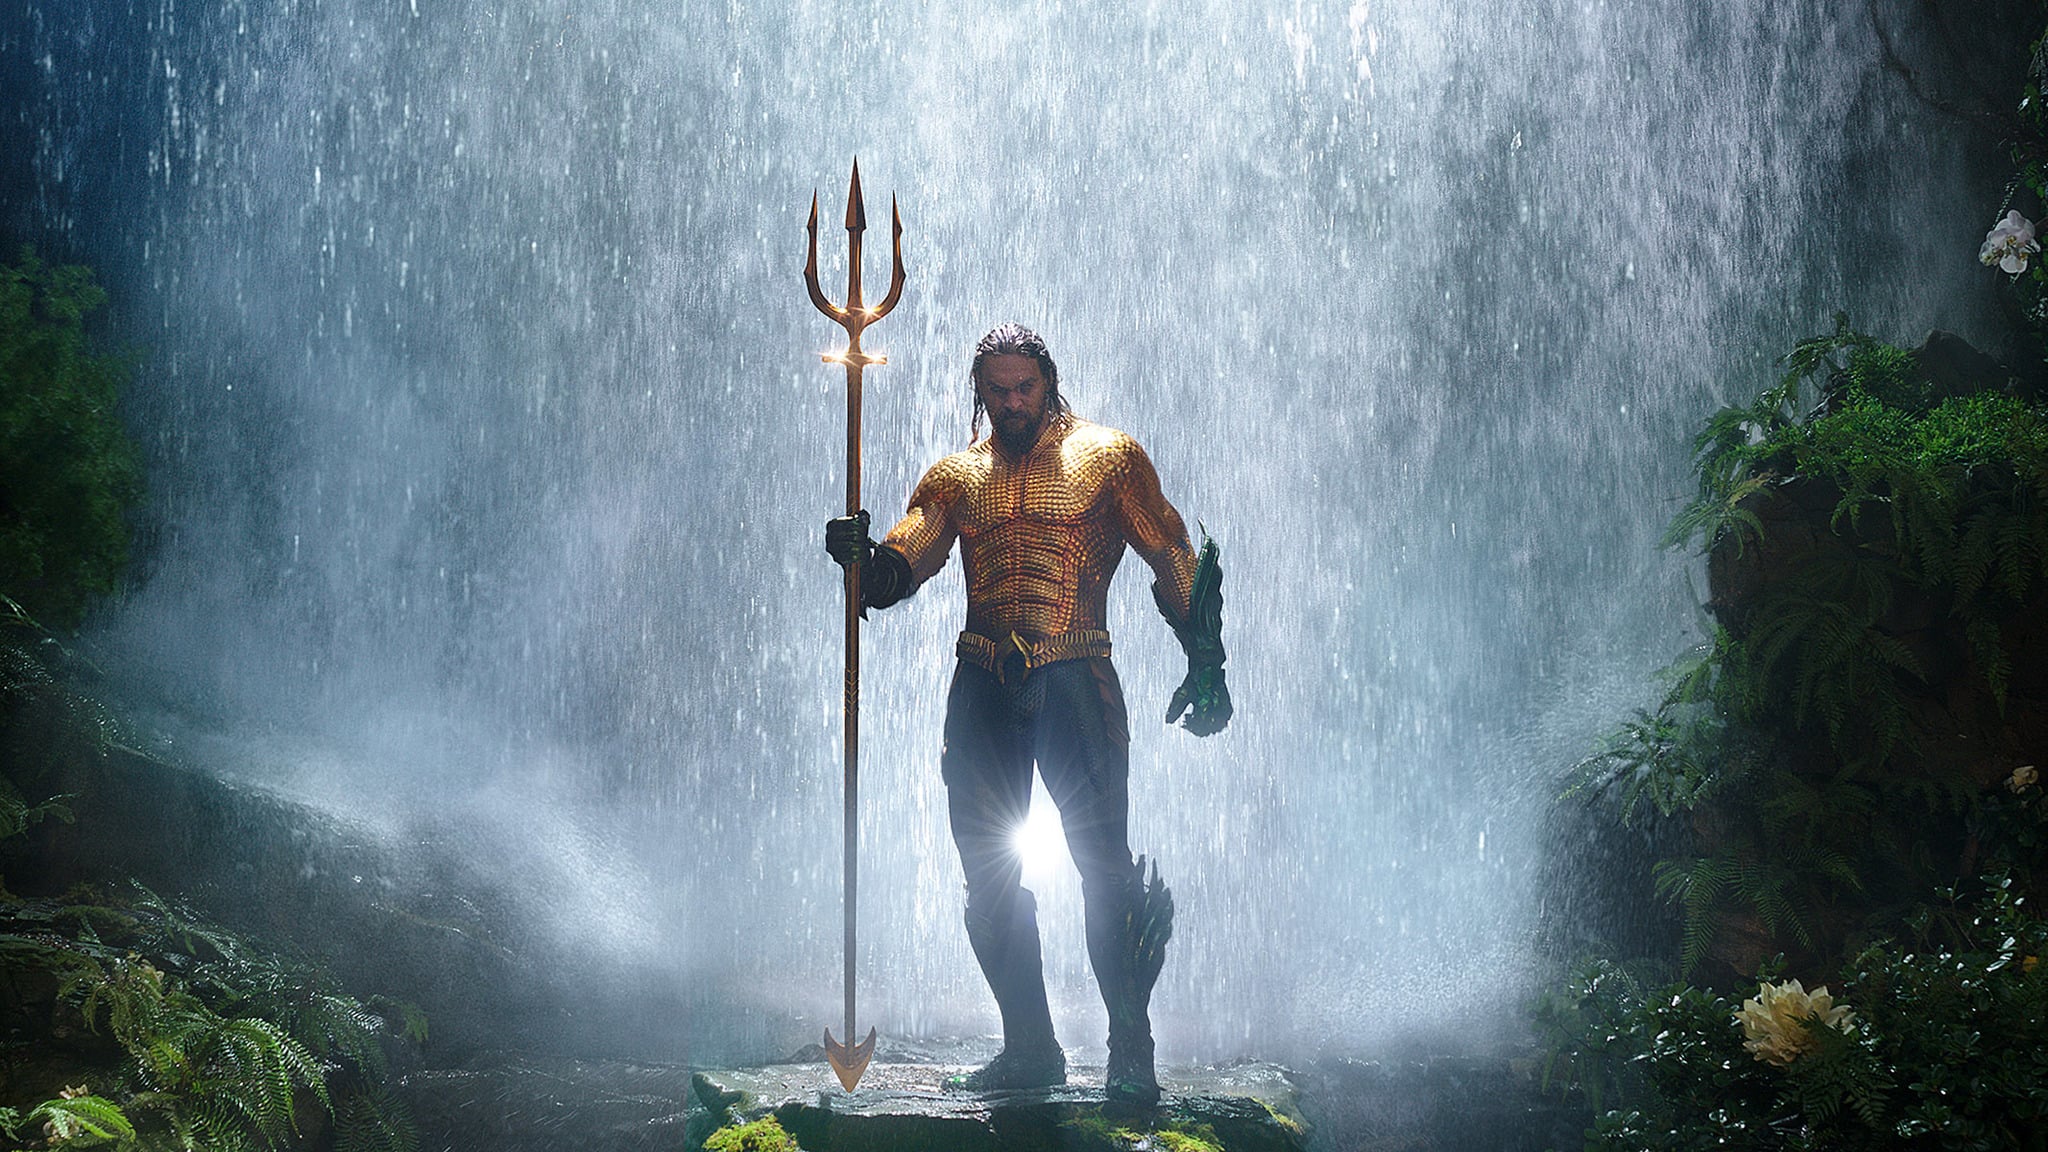 Imágenes de la película "Aquaman"